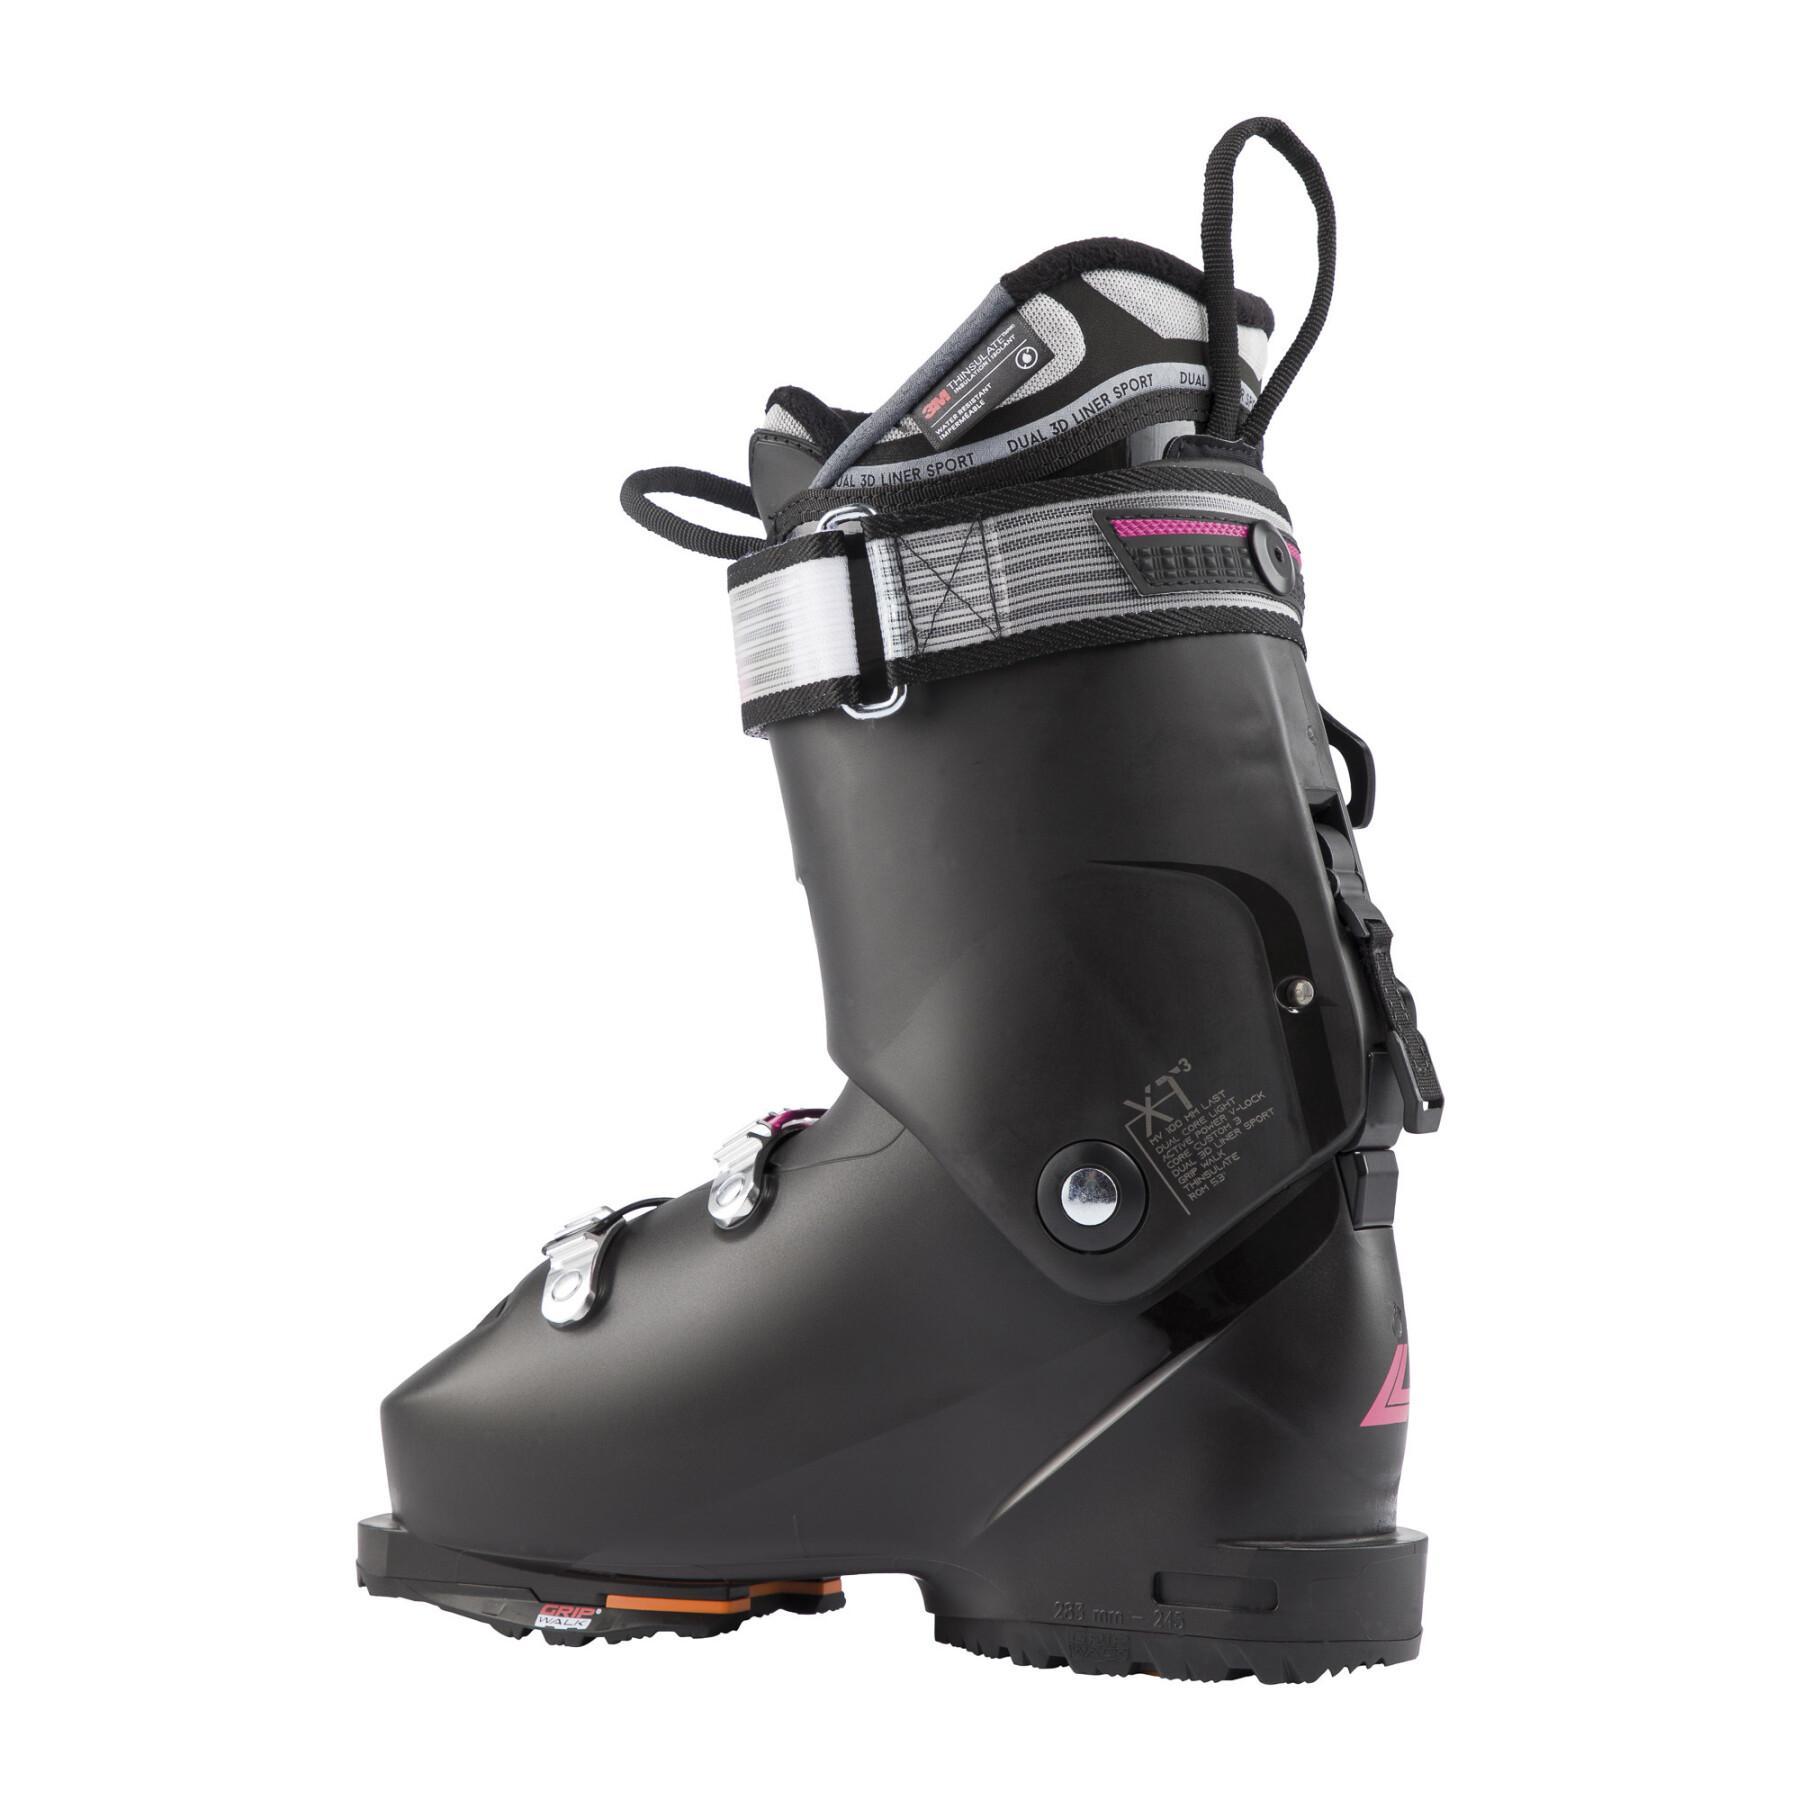 Chaussures de ski Lange XT3 FRE 85 MV GW